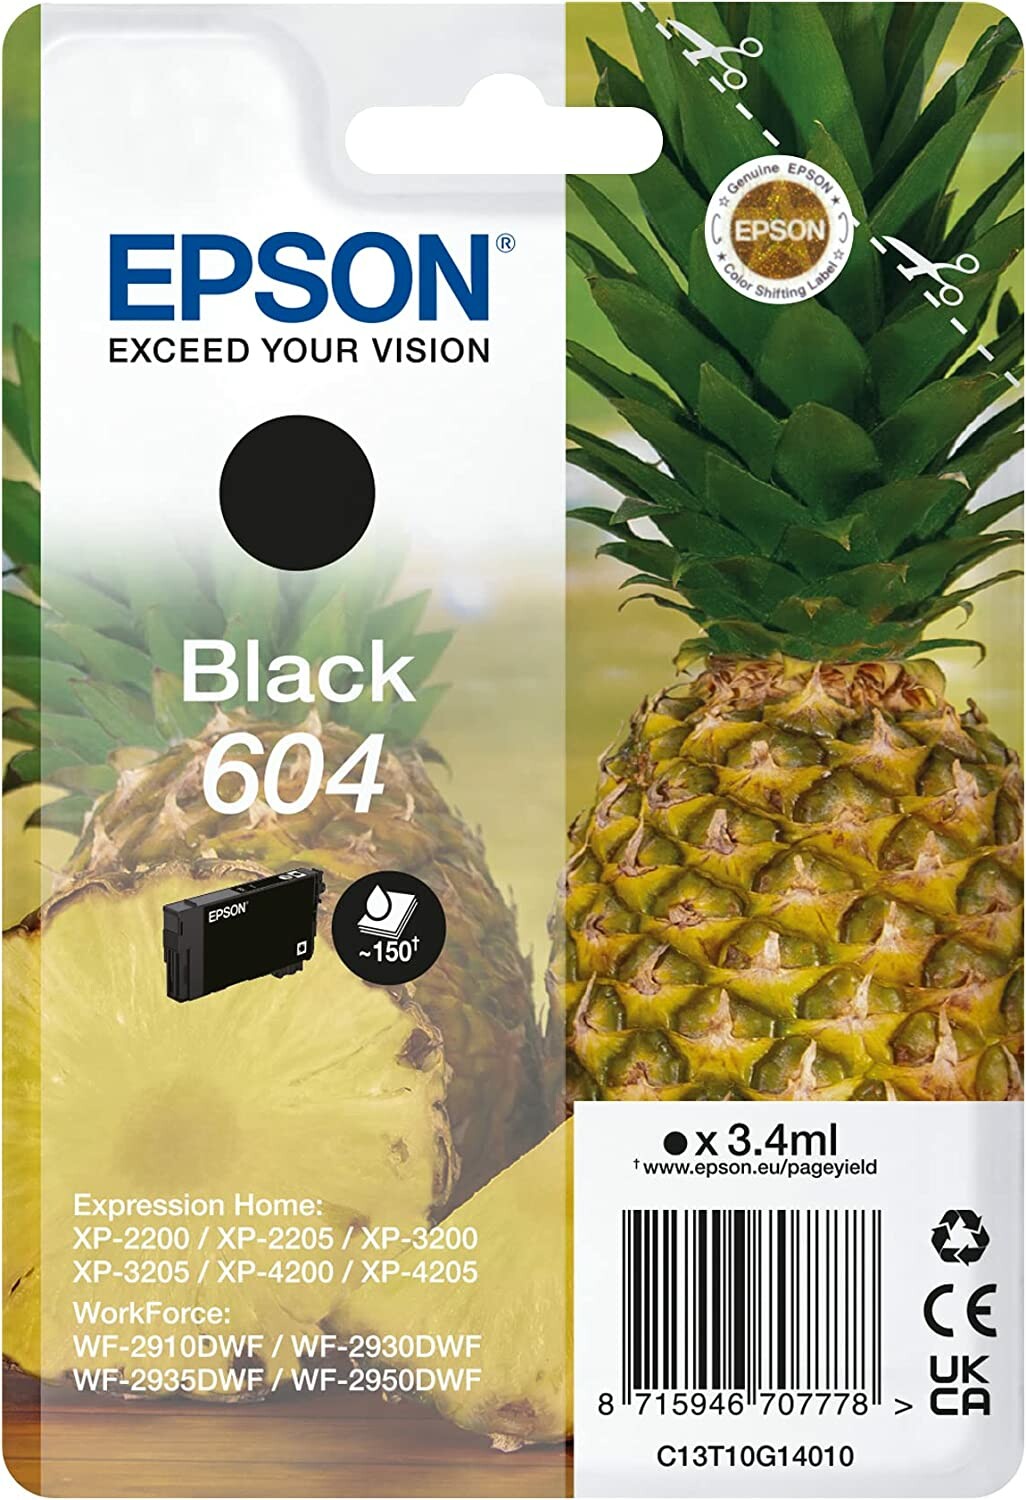 Cartouche Epson Ananas 604 Noir, Cartouches Epson